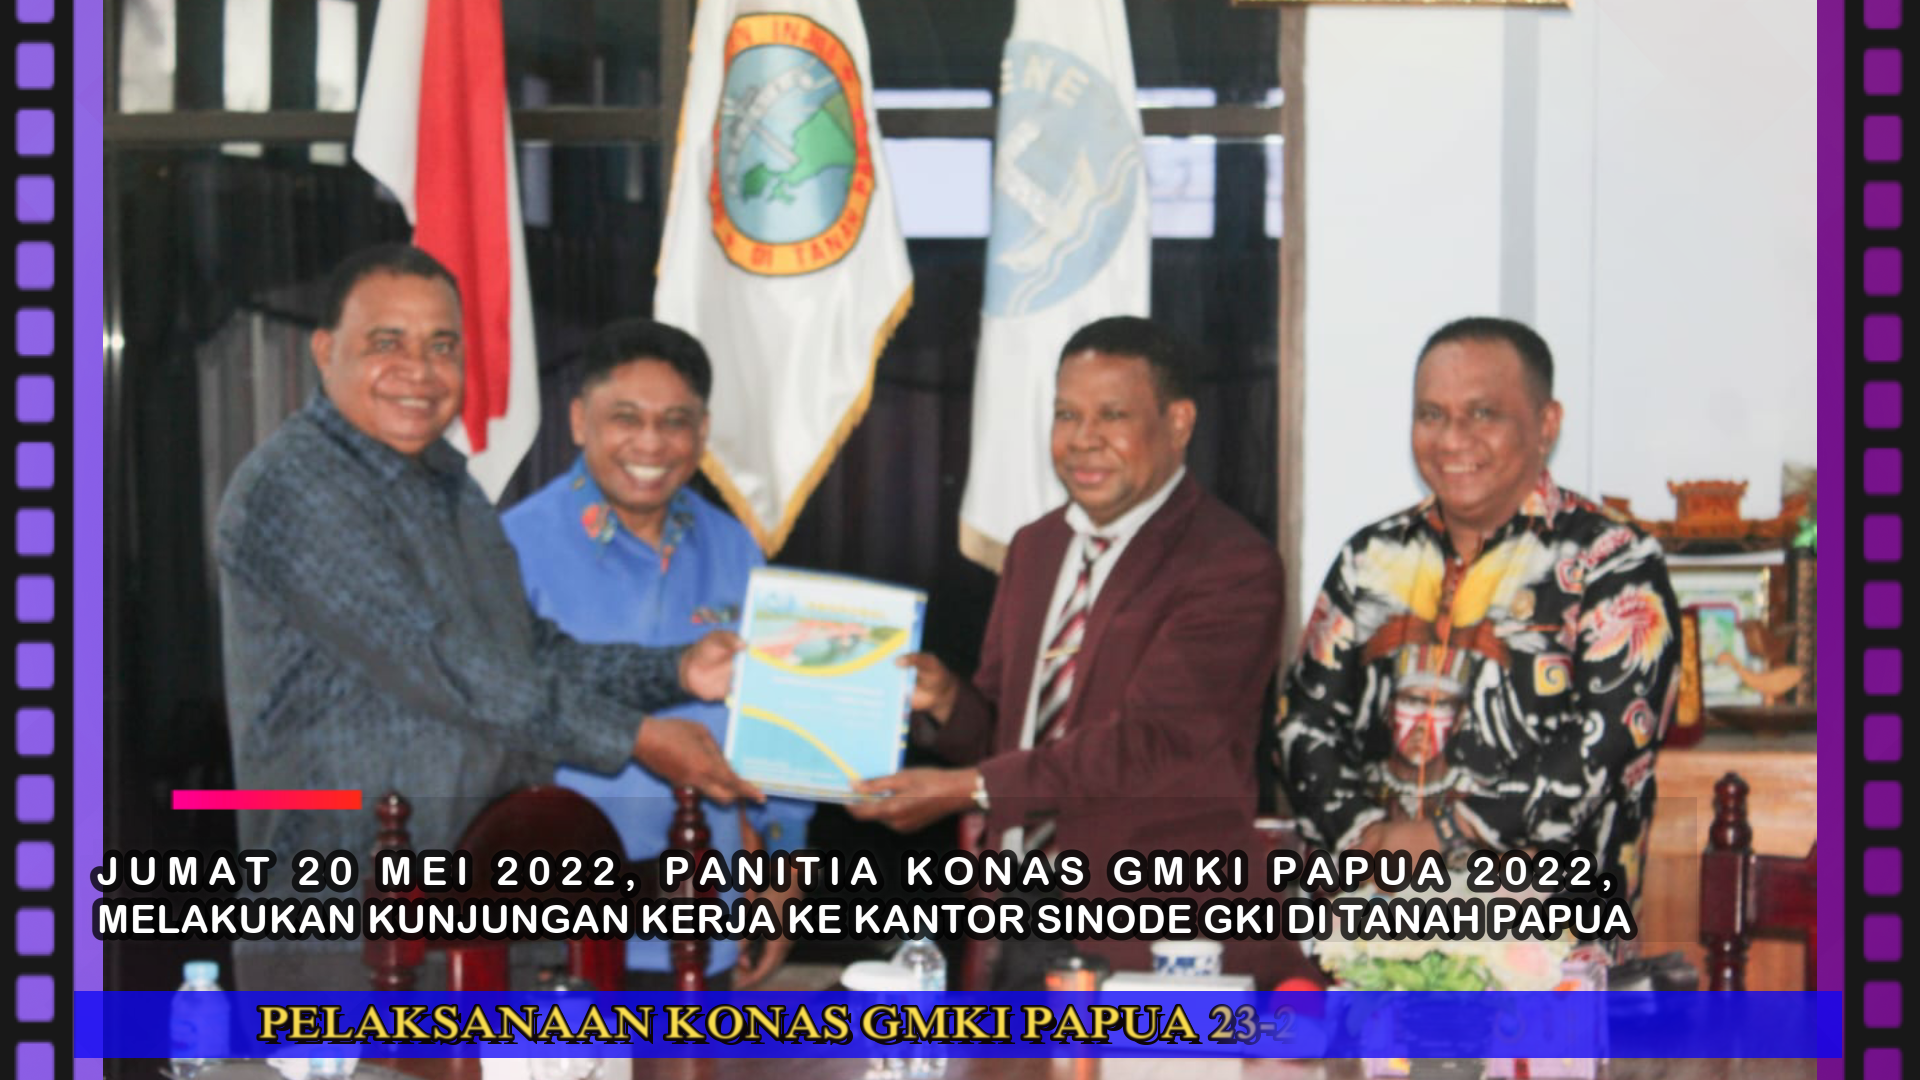 Ketua Sinode GKI Dukung Pelaksanaan KONAS GMKI 2022 di Papua. Richard (PP)